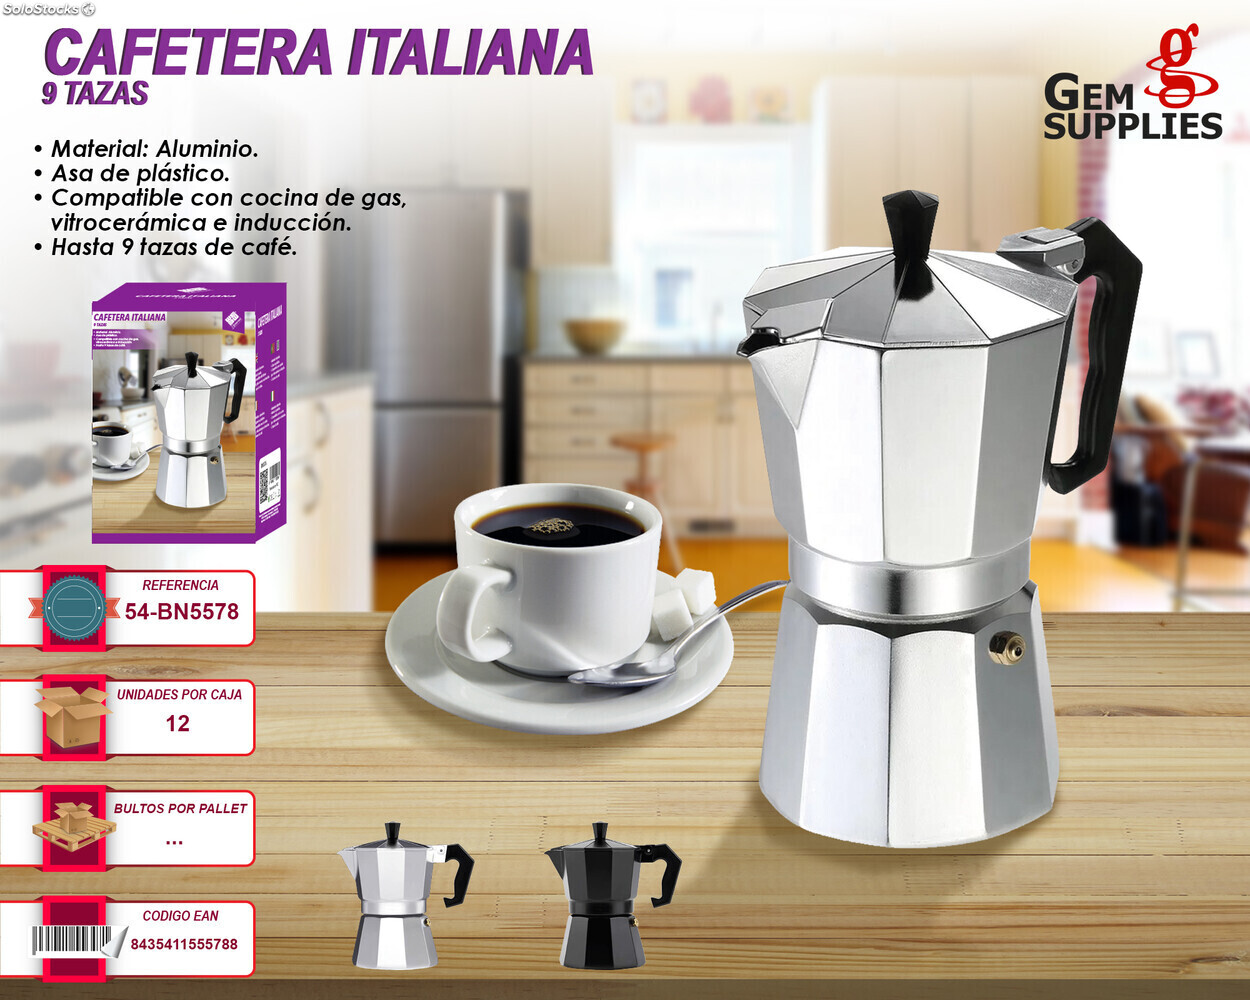 Cafetera italiana grande con estampado de vaca 9 tazas – La tienda de Sonia  nana